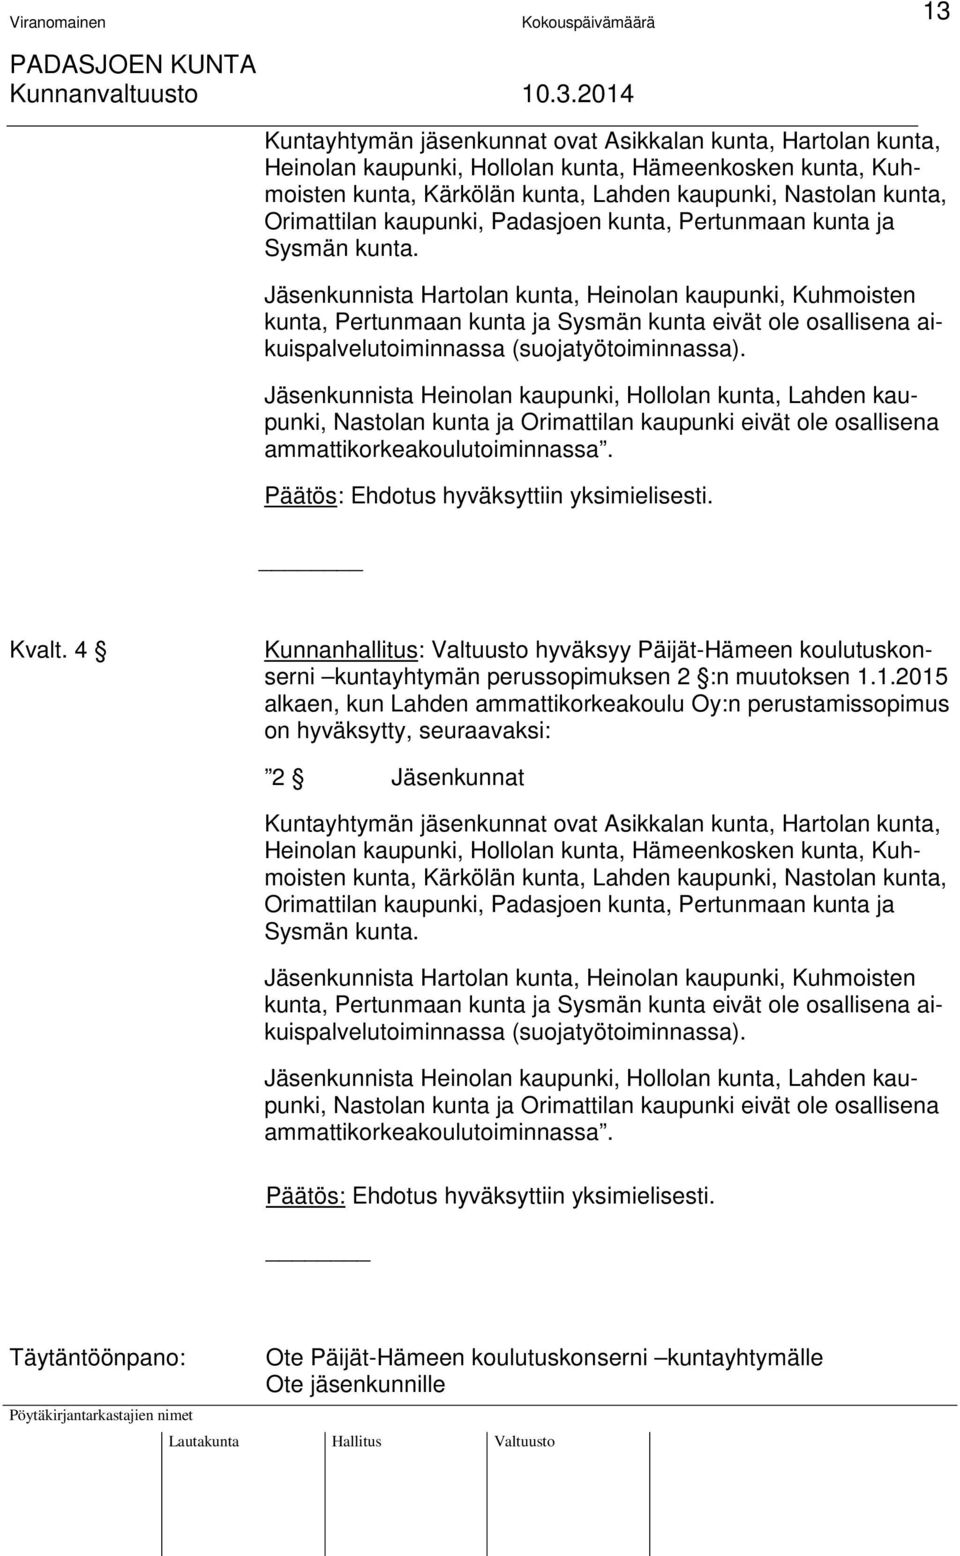 Jäsenkunnista Hartolan kunta, Heinolan kaupunki, Kuhmoisten kunta, Pertunmaan kunta ja Sysmän kunta eivät ole osallisena aikuispalvelutoiminnassa (suojatyötoiminnassa).